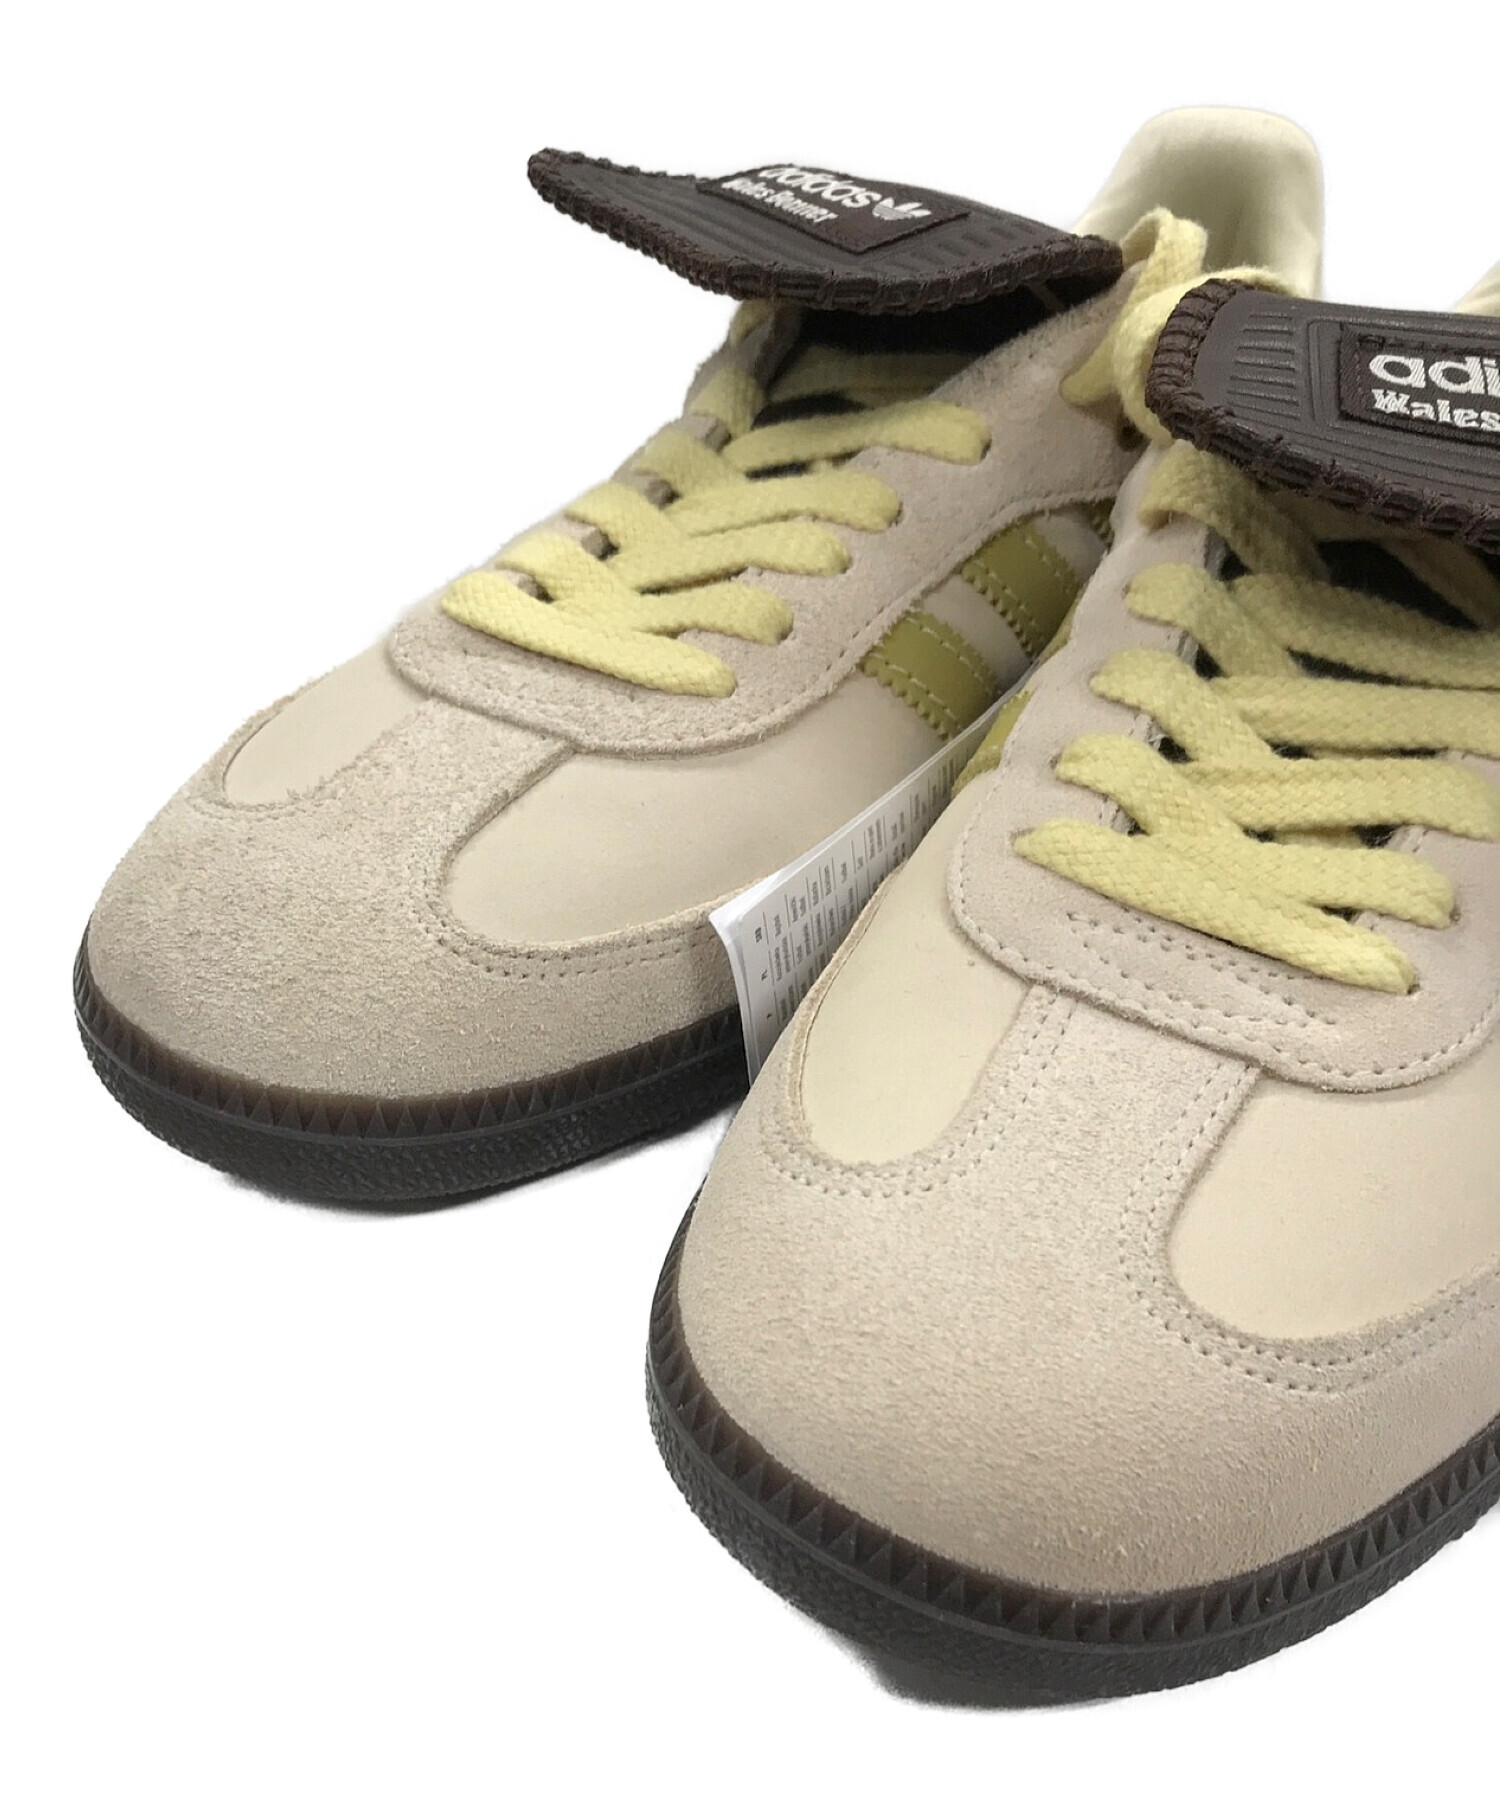 adidas (アディダス) サンバ ウェールズ ボナー ヌバック ブラウン×ベージュ サイズ:27.5